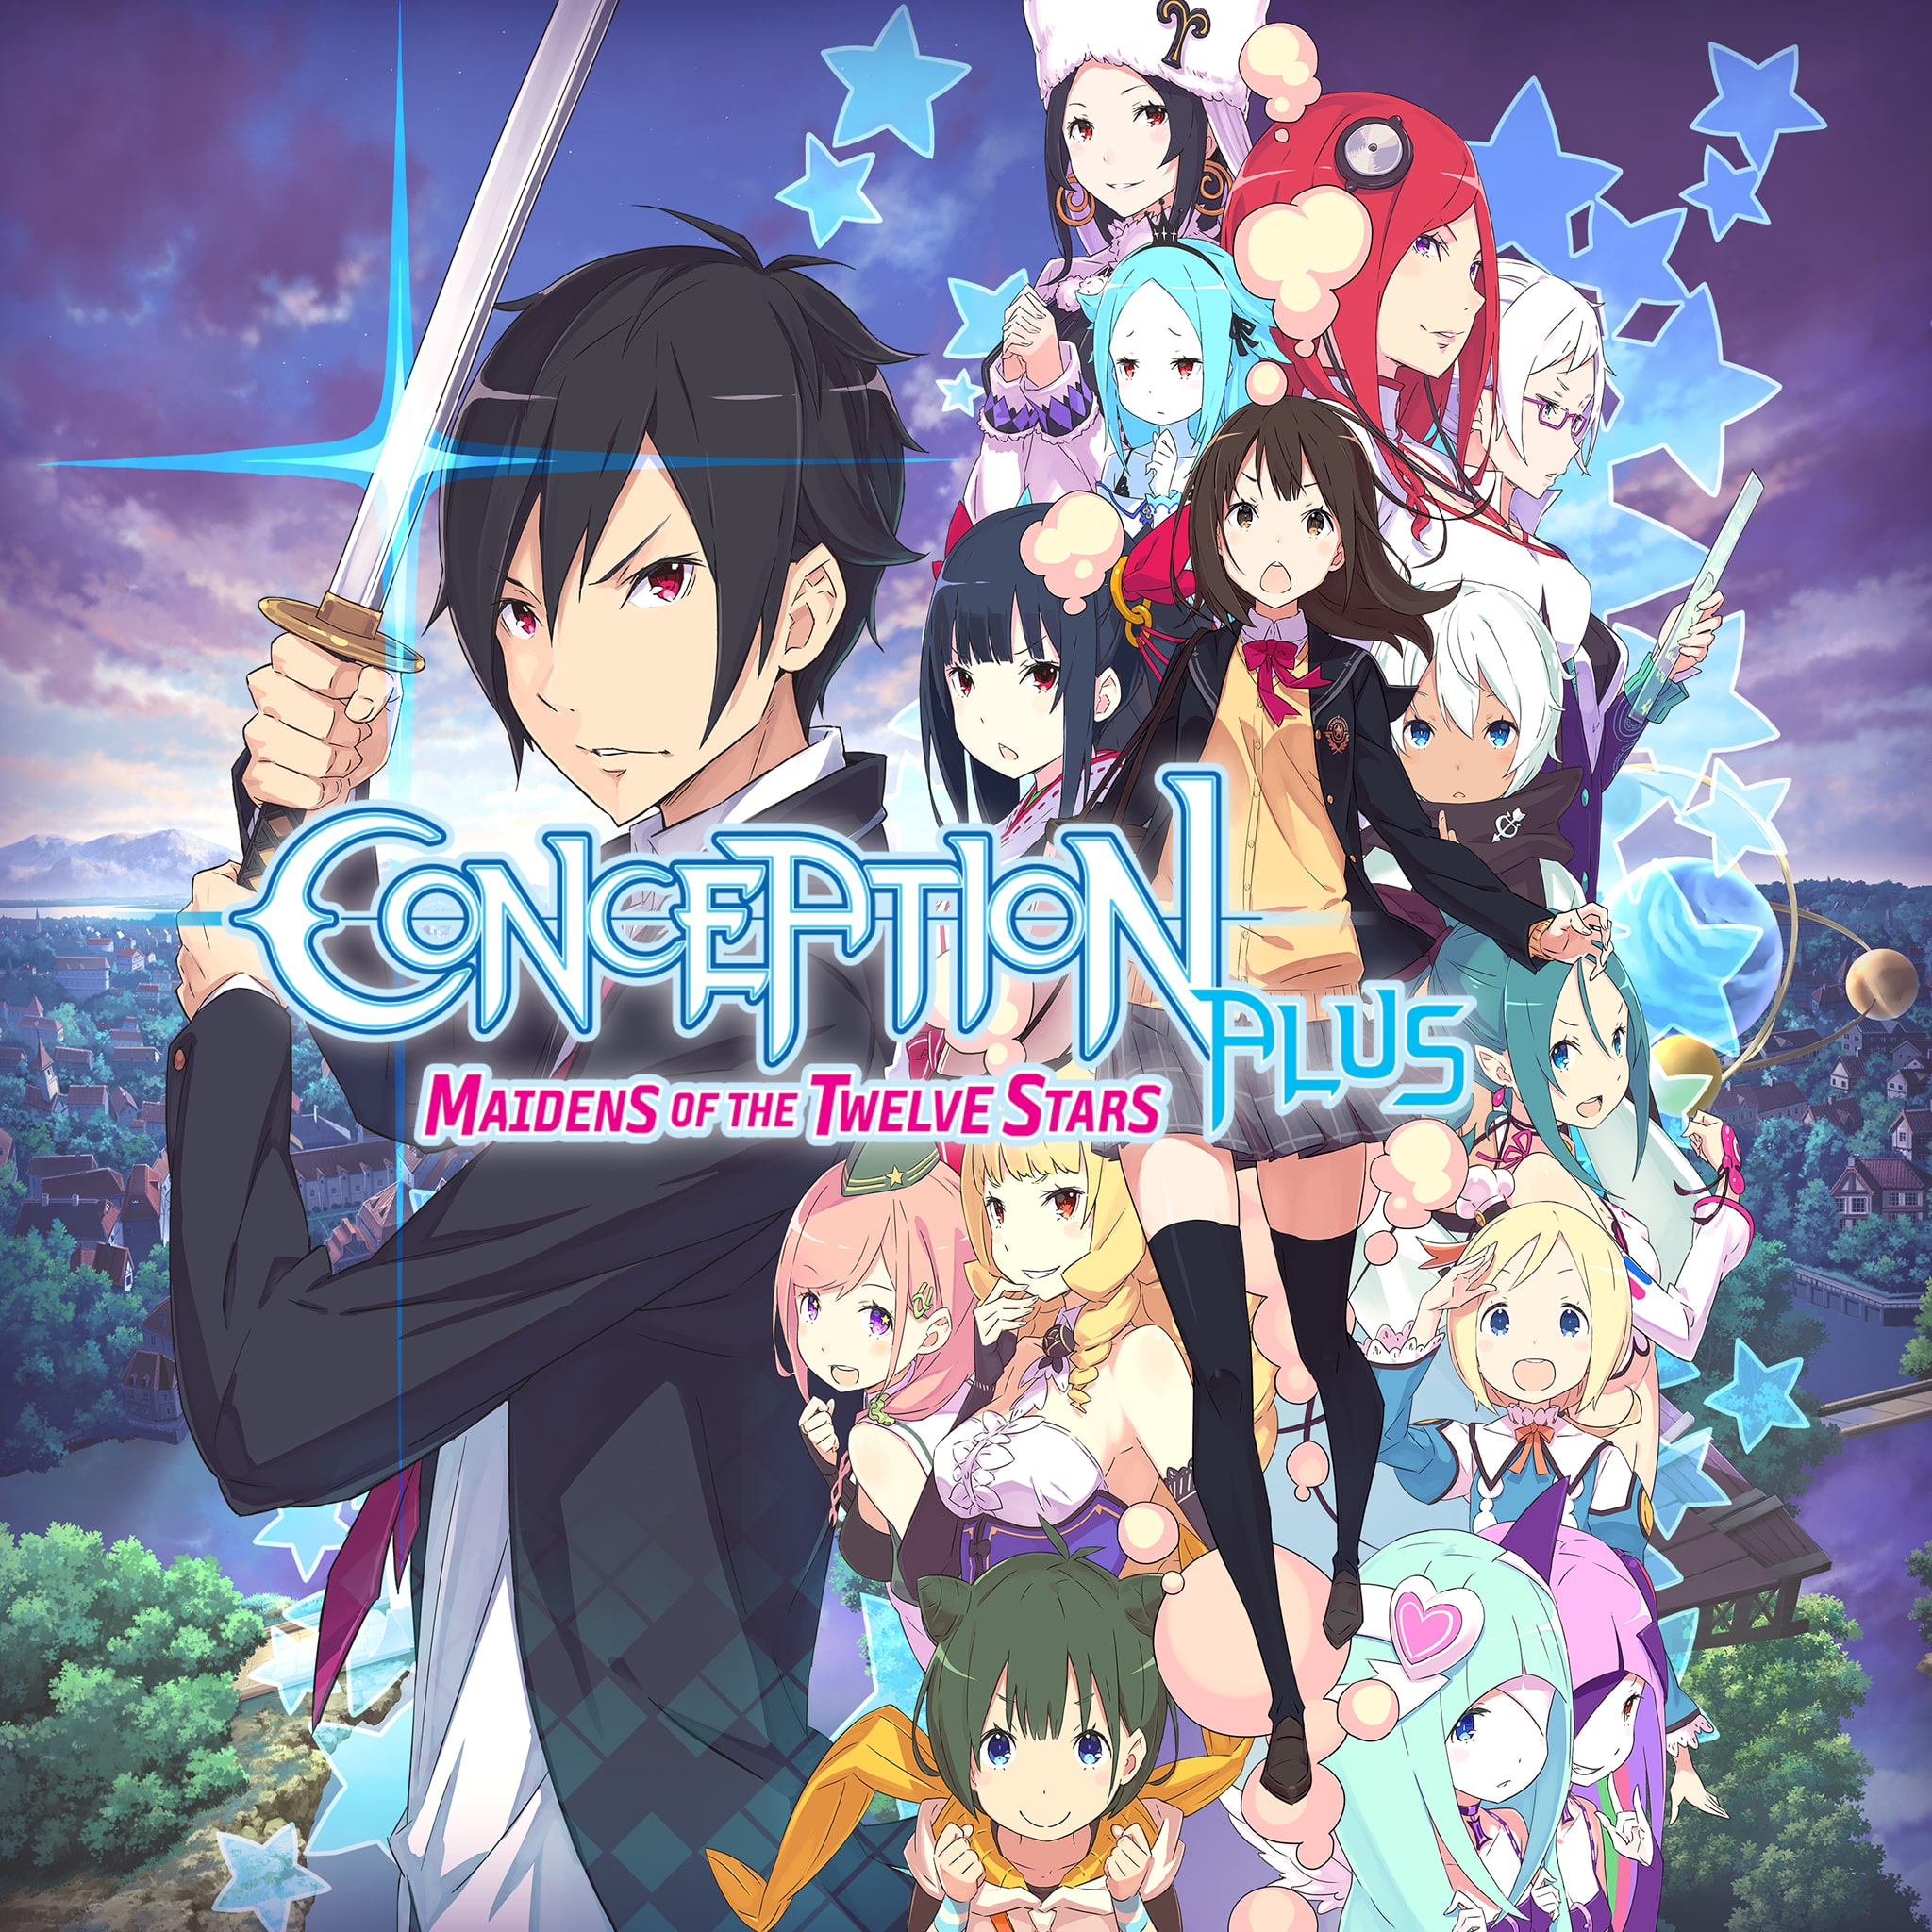 Conception Plus tem data de lançamento revelada - Anime United